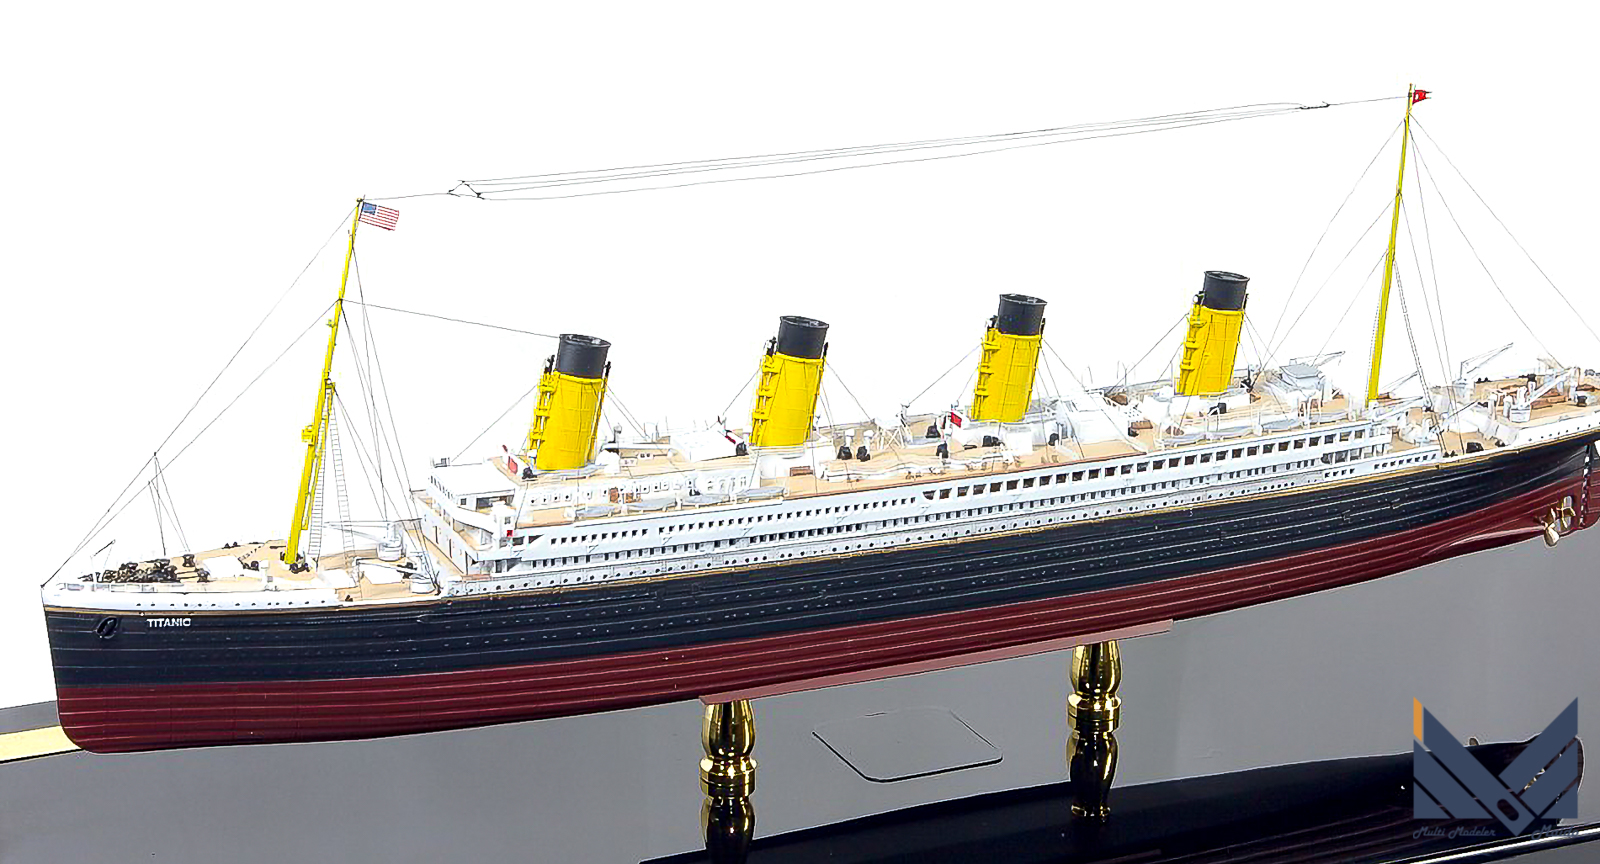 アカデミー 1/700 タイタニック 完成品 ACADEMY RMS Titanic - 模型工房M